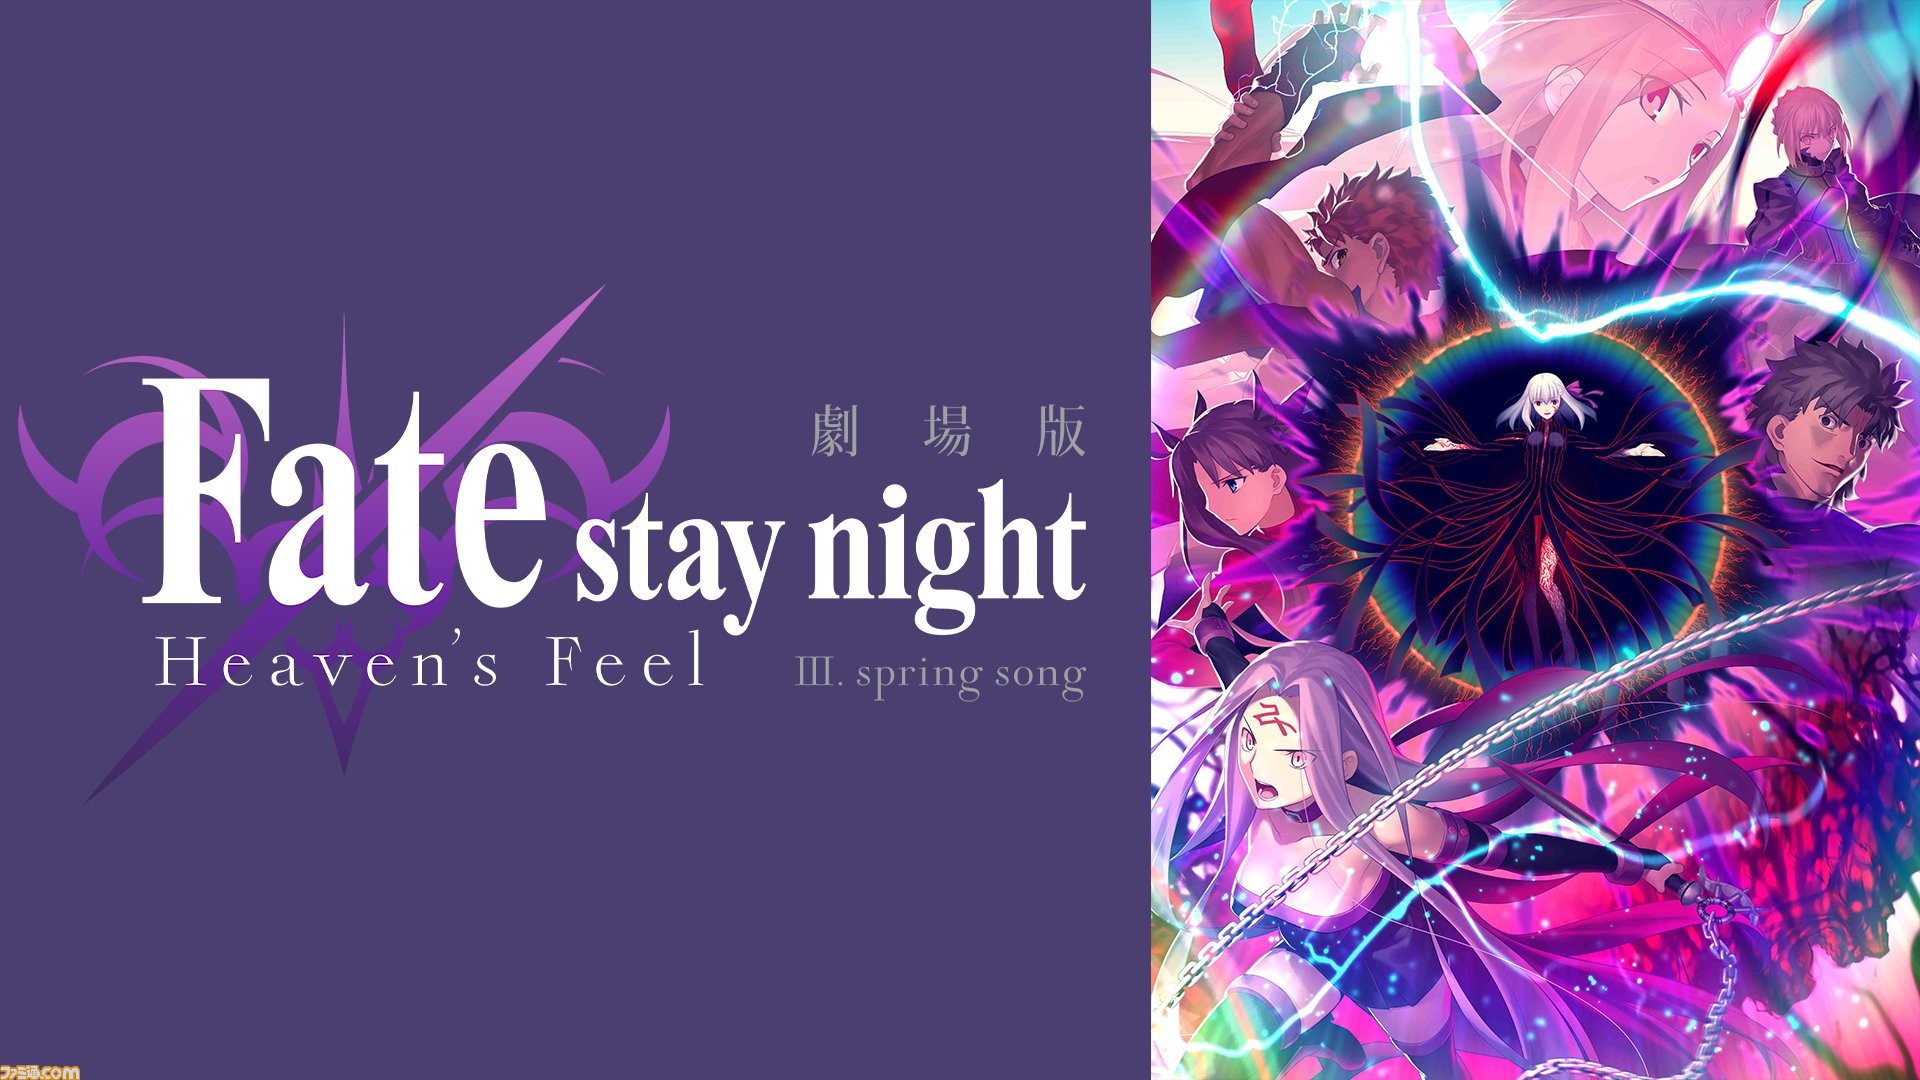 劇場版 Fate Stay Night Hf 第三章 が公開延期に 変更後の公開日は4月25日を予定も再度変更の可能性あり ファミ通 Com